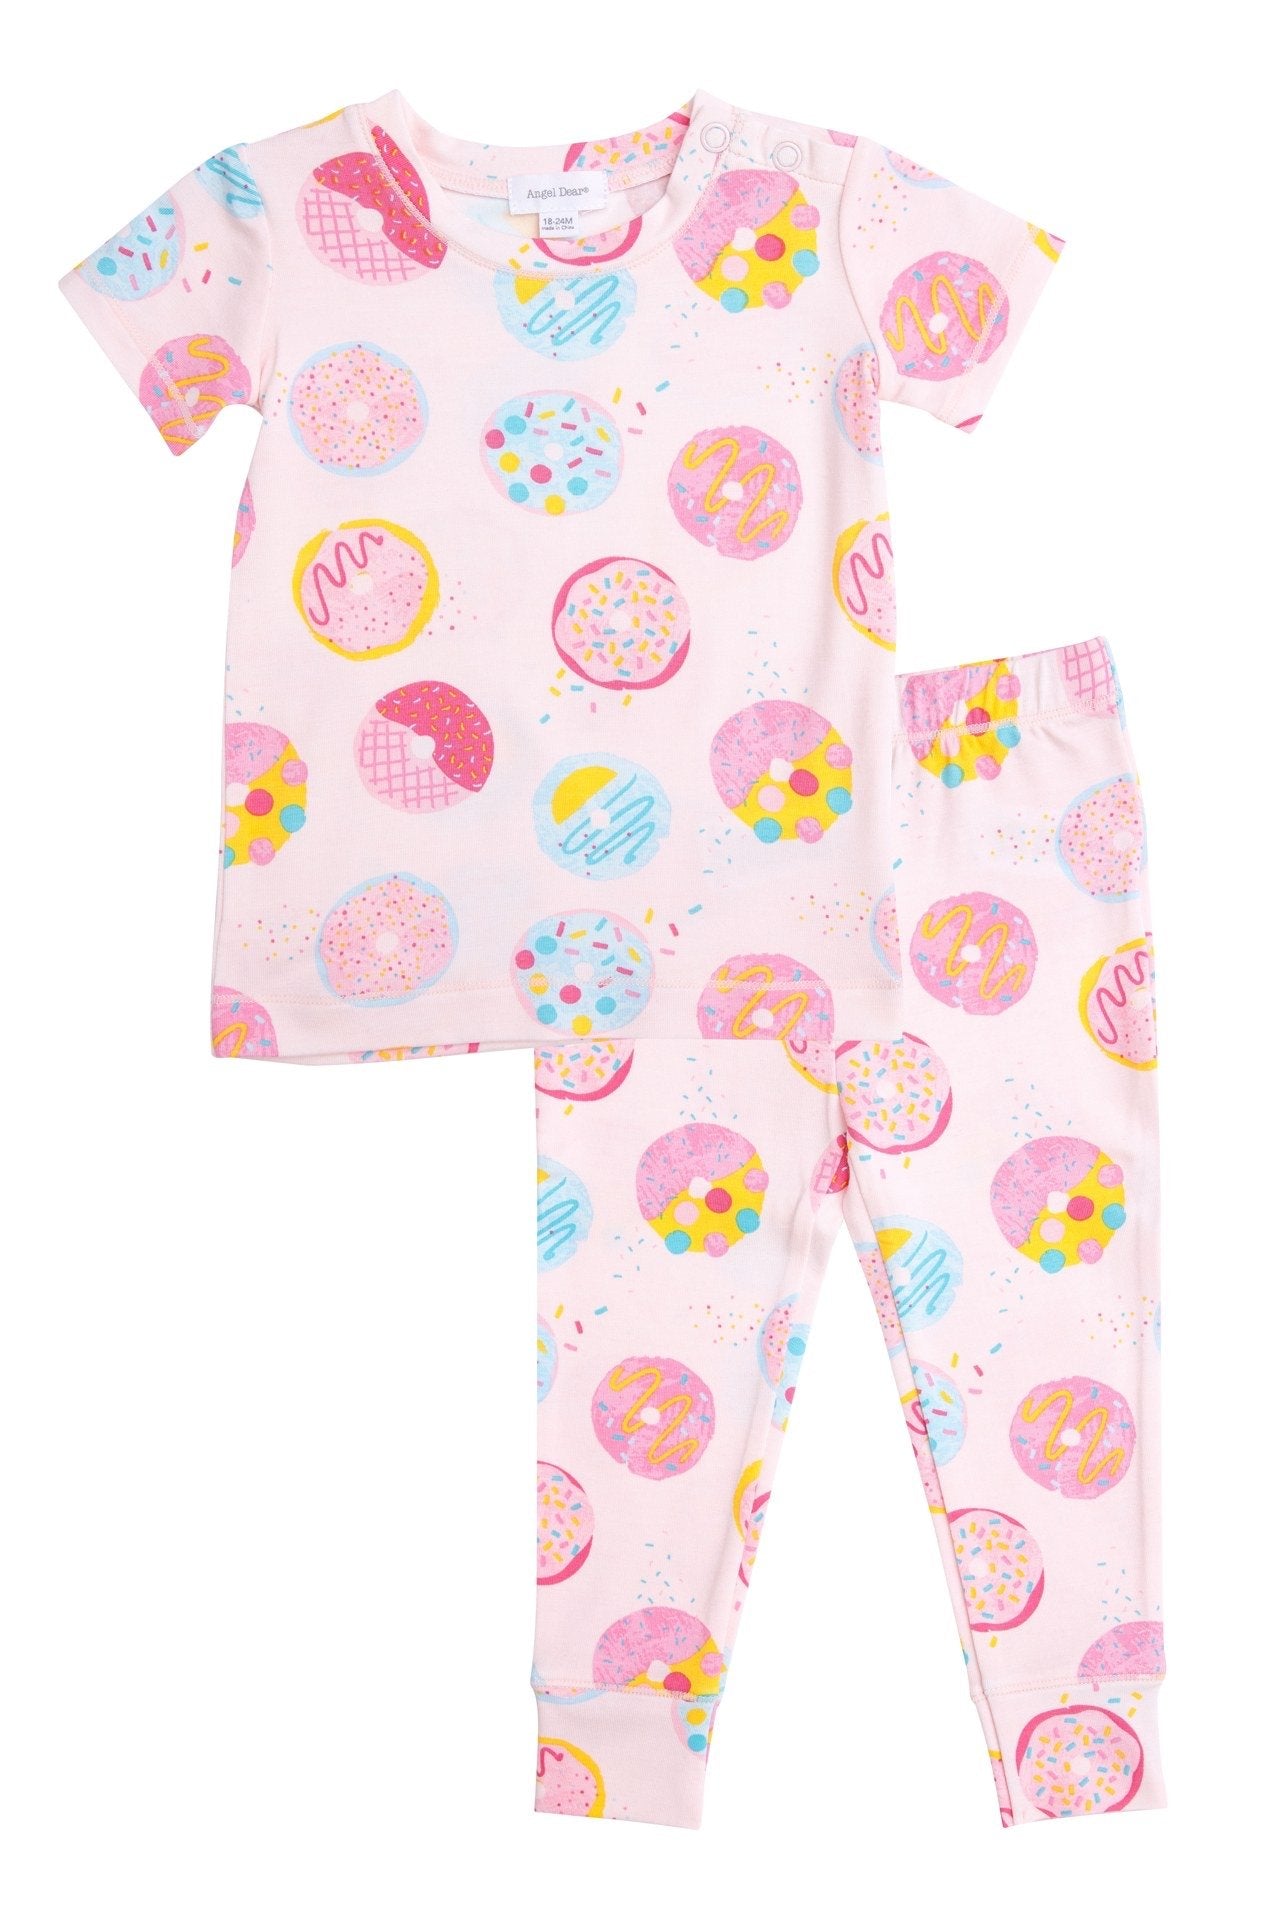 donuts Bamboo Pajama